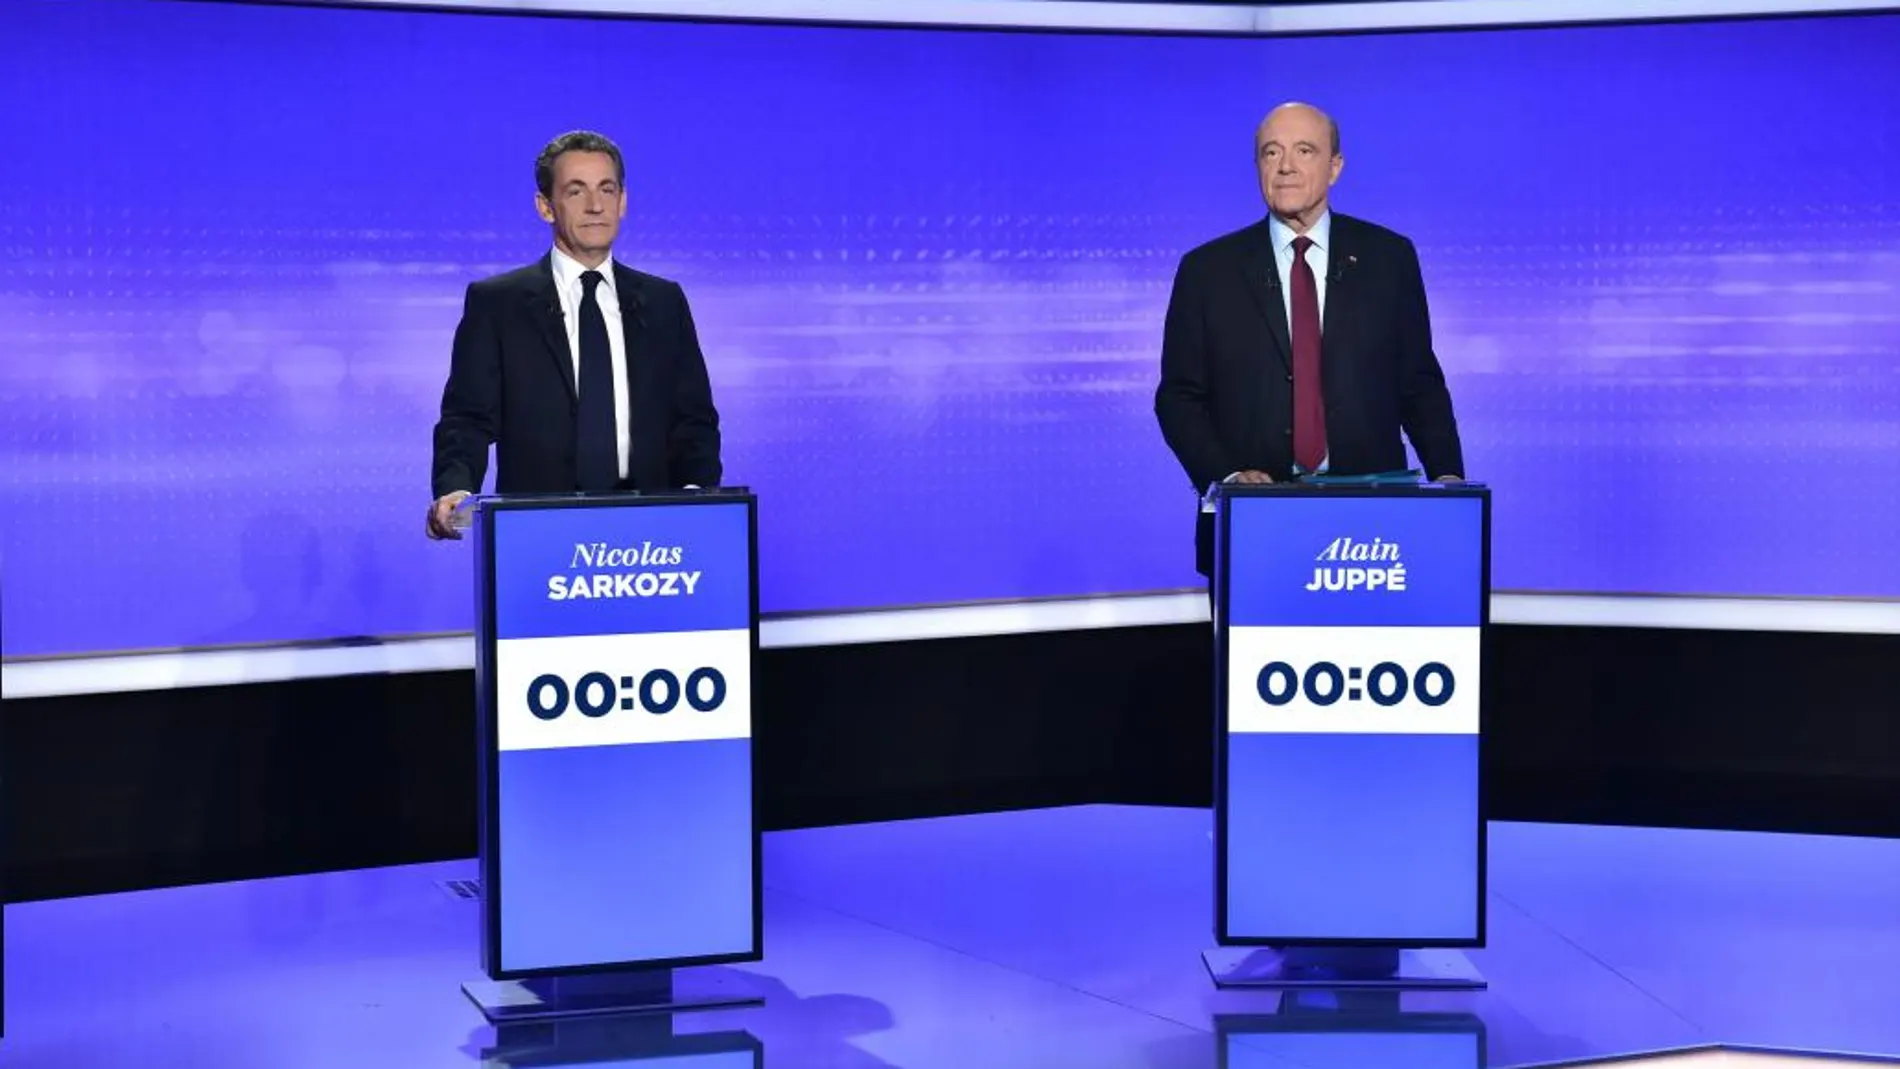 Los candidatos a las primarias del partido de derecha durante un debate televisivo el pasado jueves